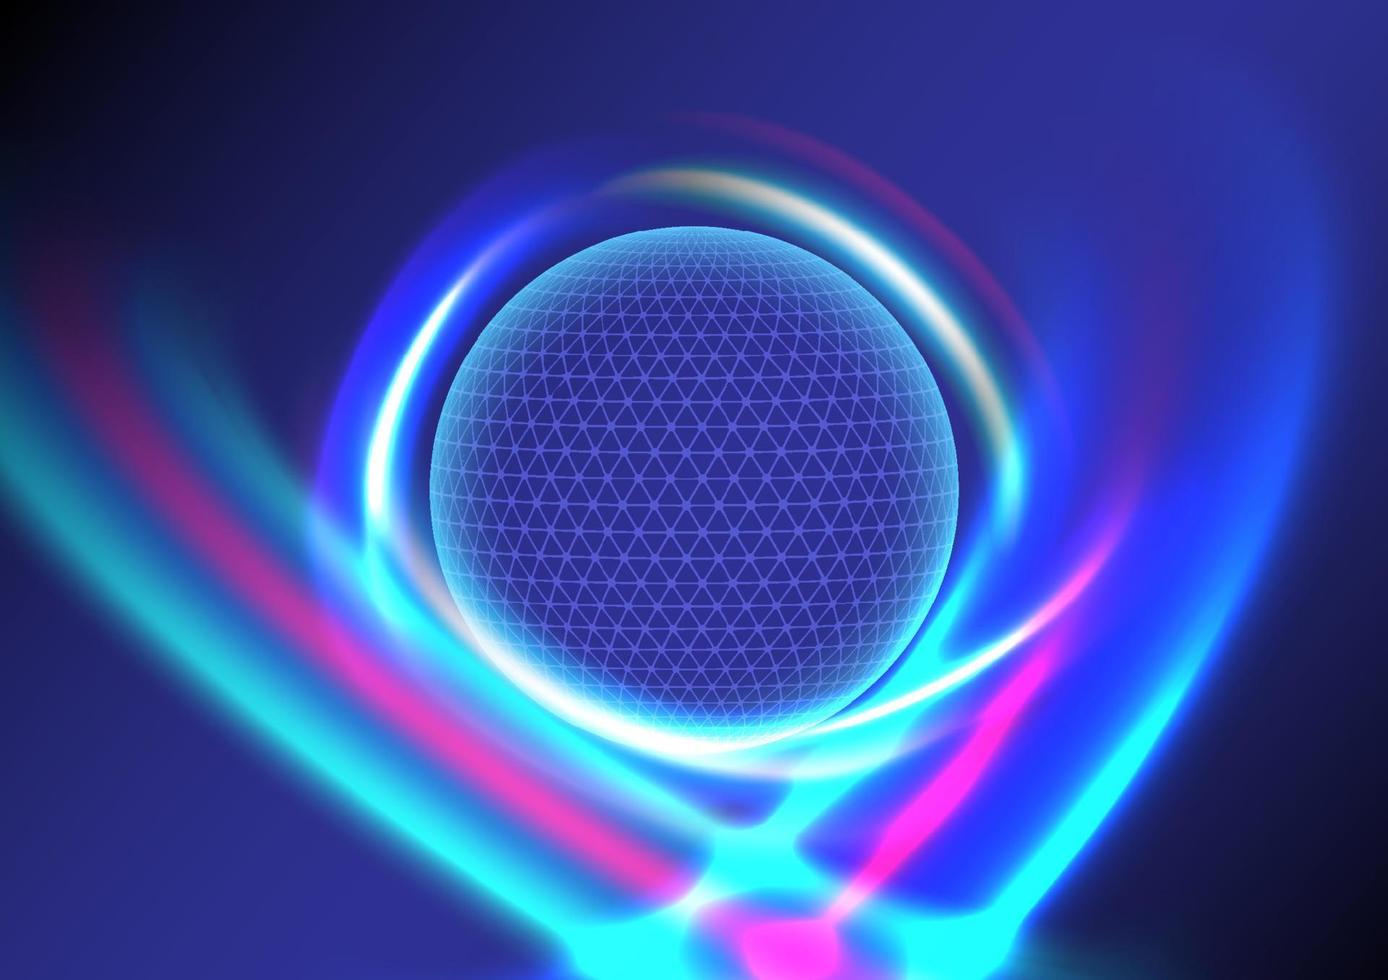 cercle de globe lumineux sur fond bleu hi-tech avec des lignes courbes laser lumineuses multicolores autour de lui sur fond dégradé bleu. vecteur